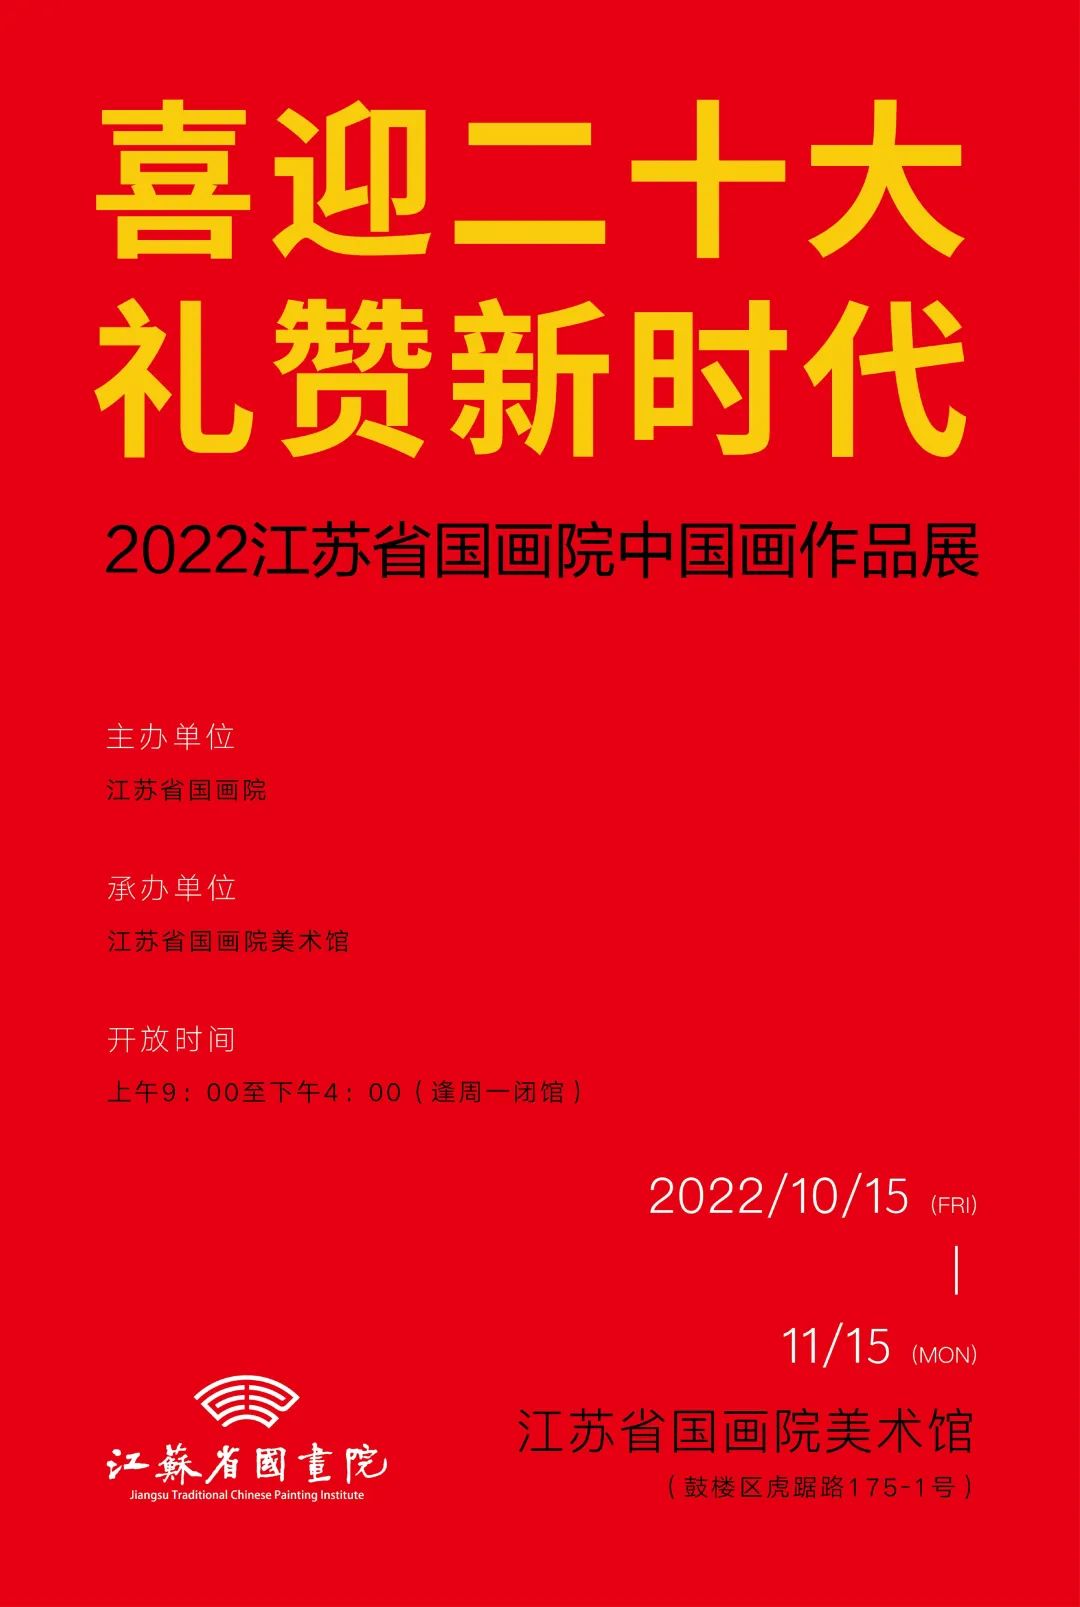 喜迎二十大 礼赞新时代·2022江苏省国画院中国画作品展